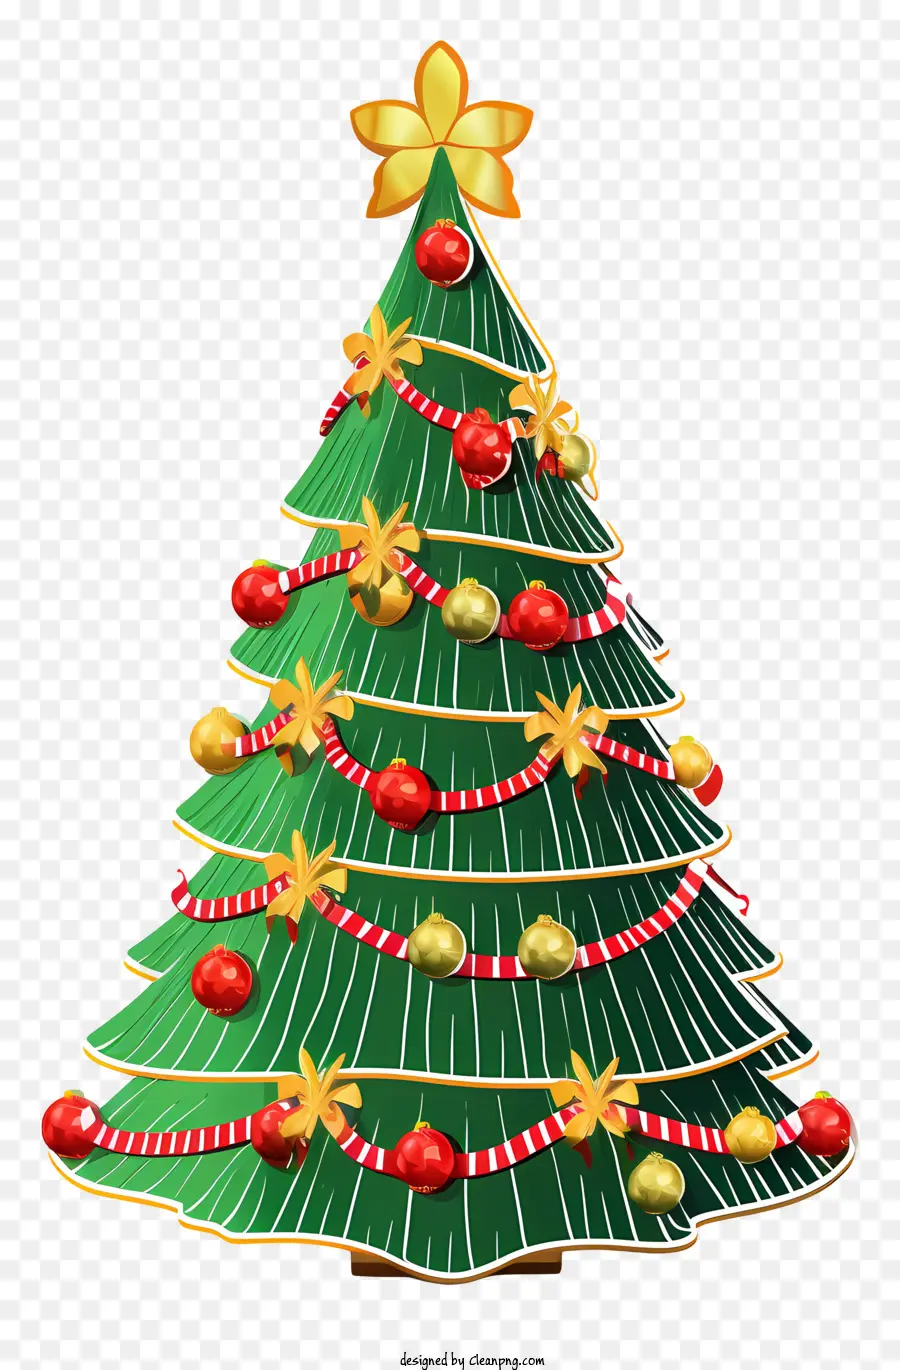 Christbaumschmuck - Grüner Kranz -Weihnachtsbaum mit Ornamenten und Stern